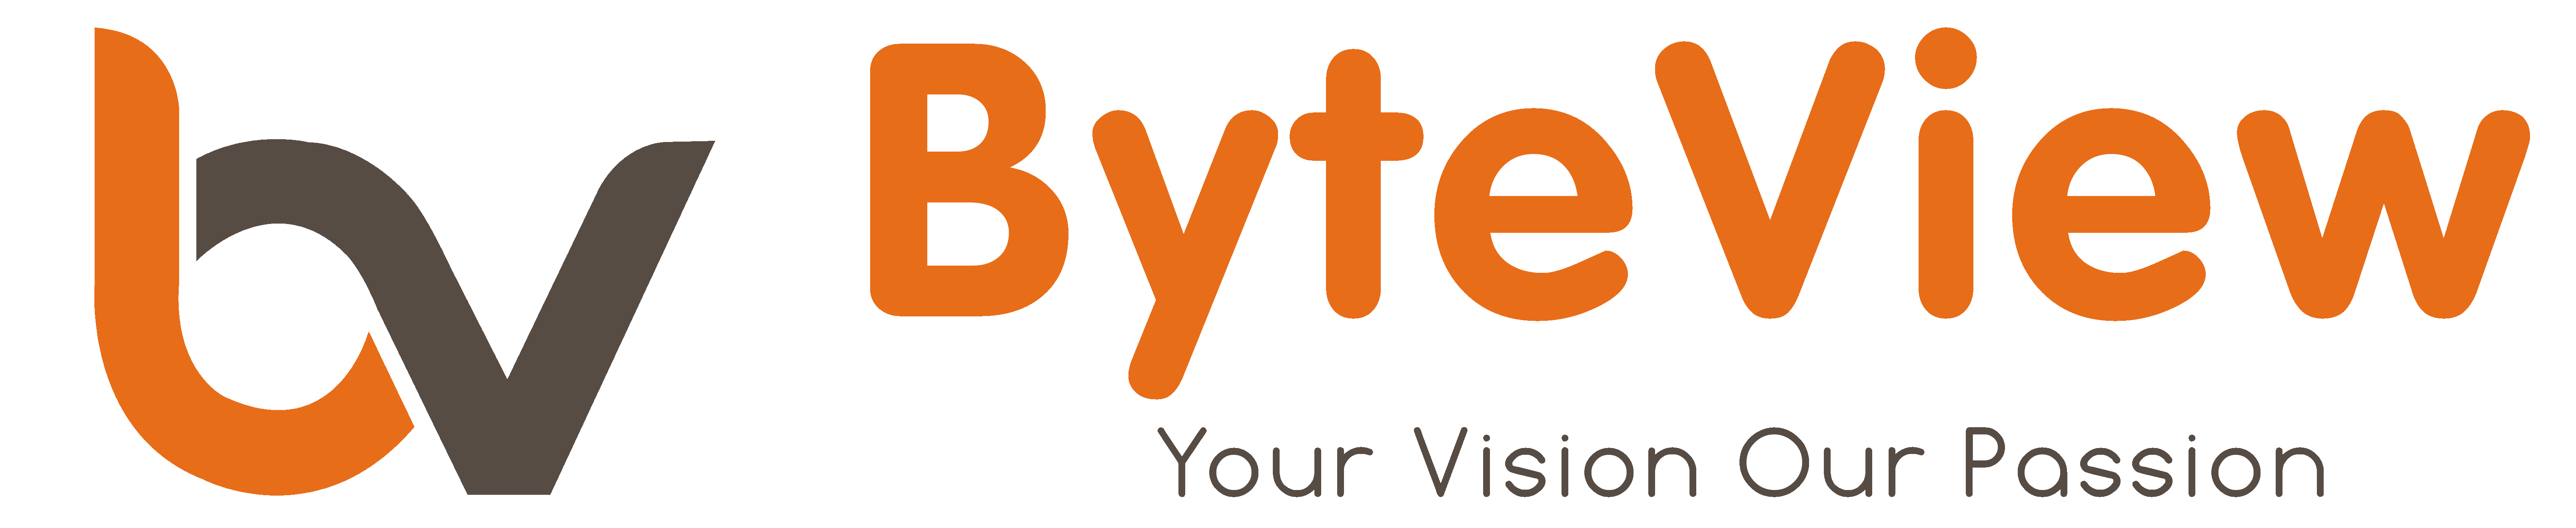 Byteview_logo